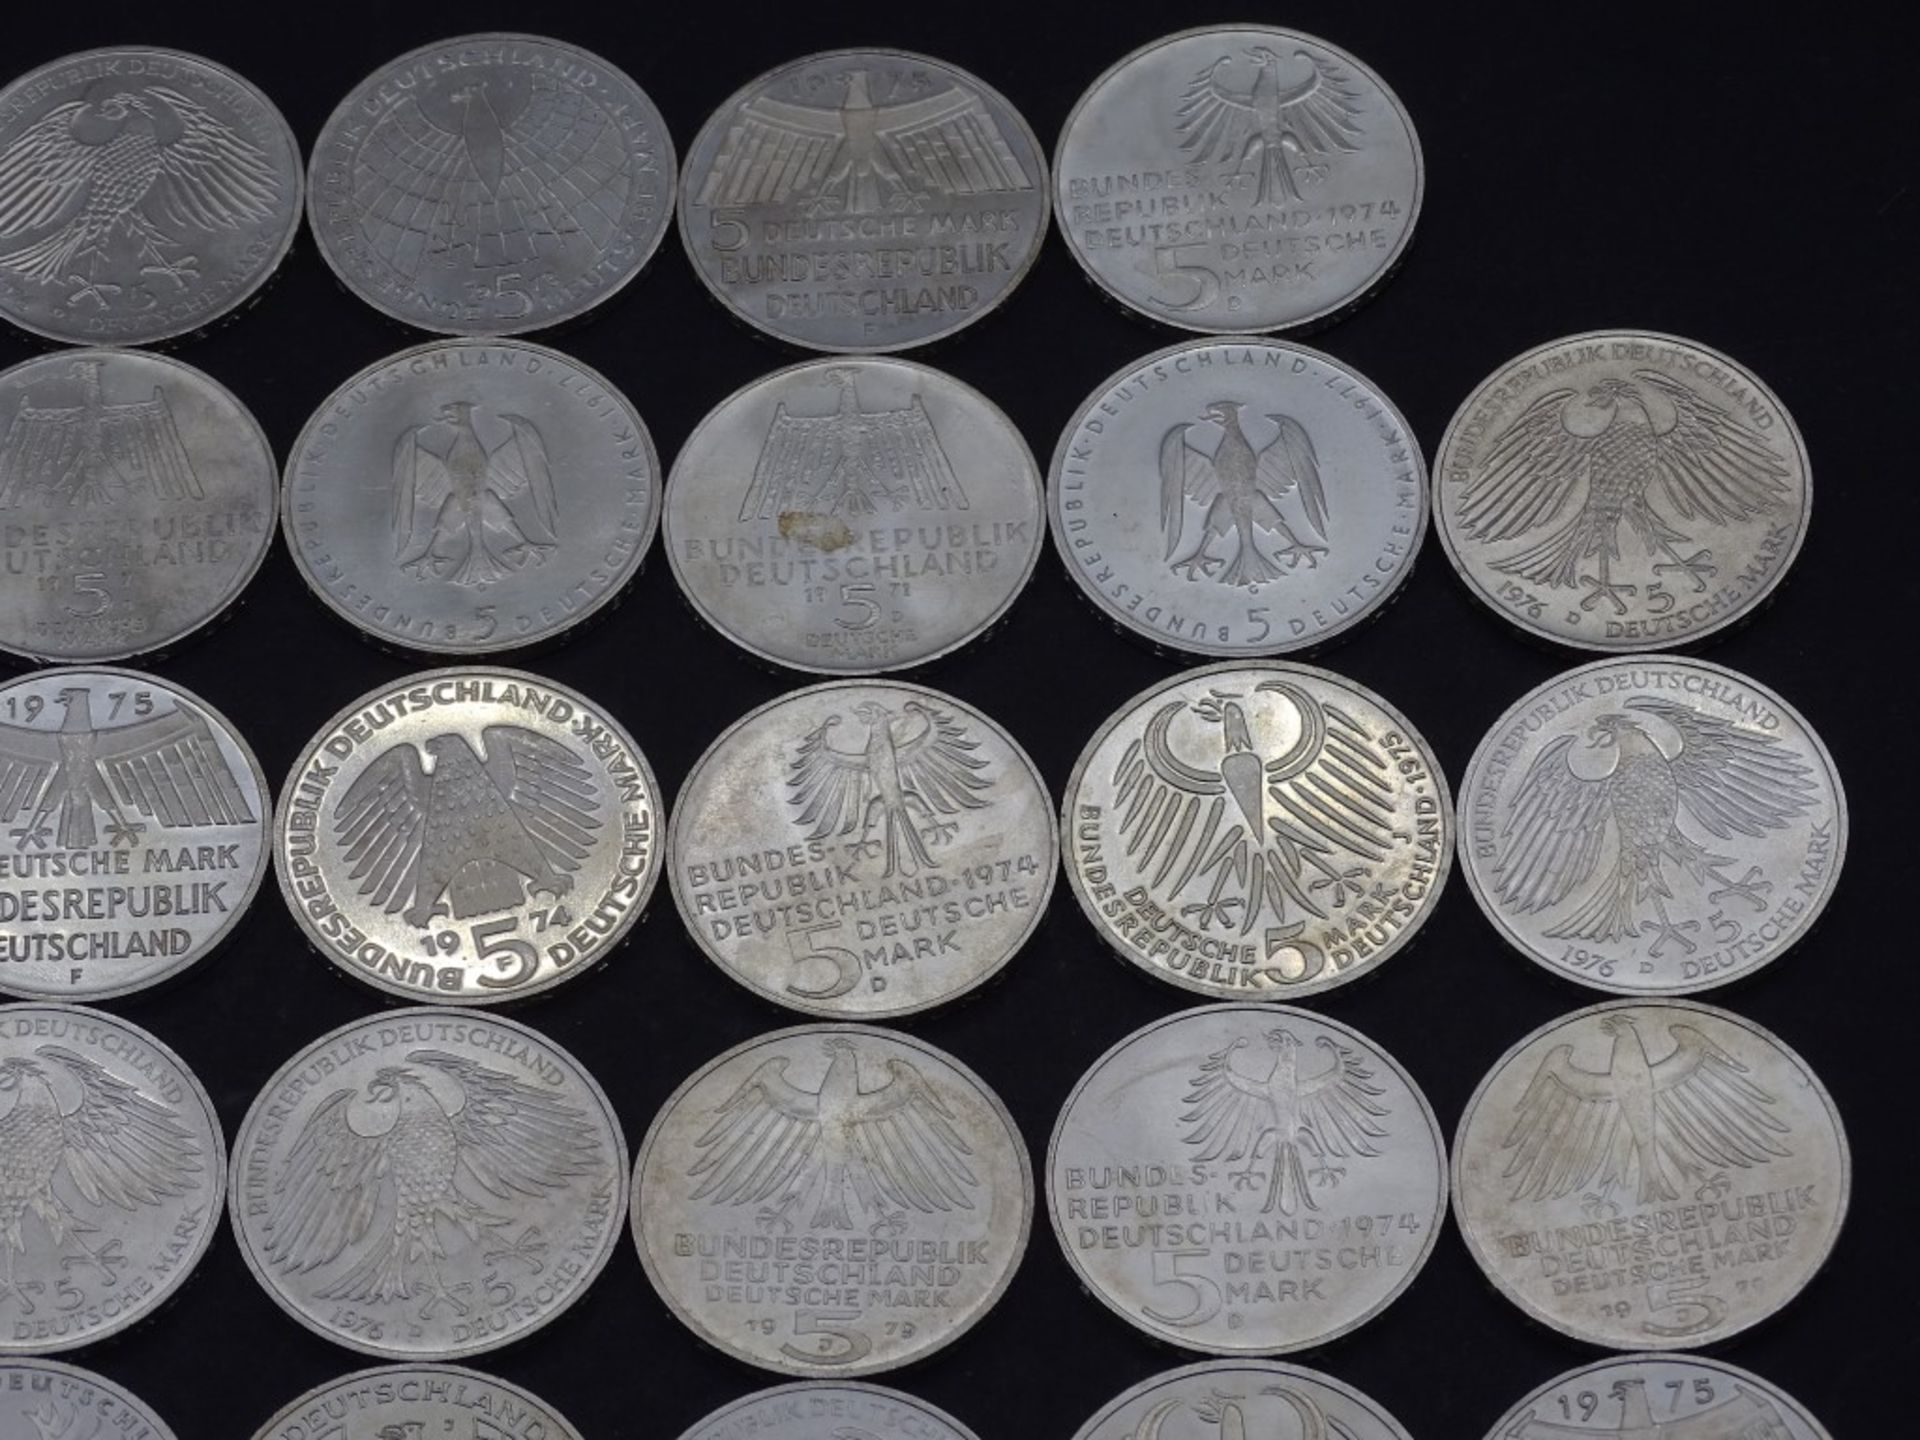 40x 5 DM Münzen,Silber,ges. 200 Deutsche Mar - Bild 7 aus 10